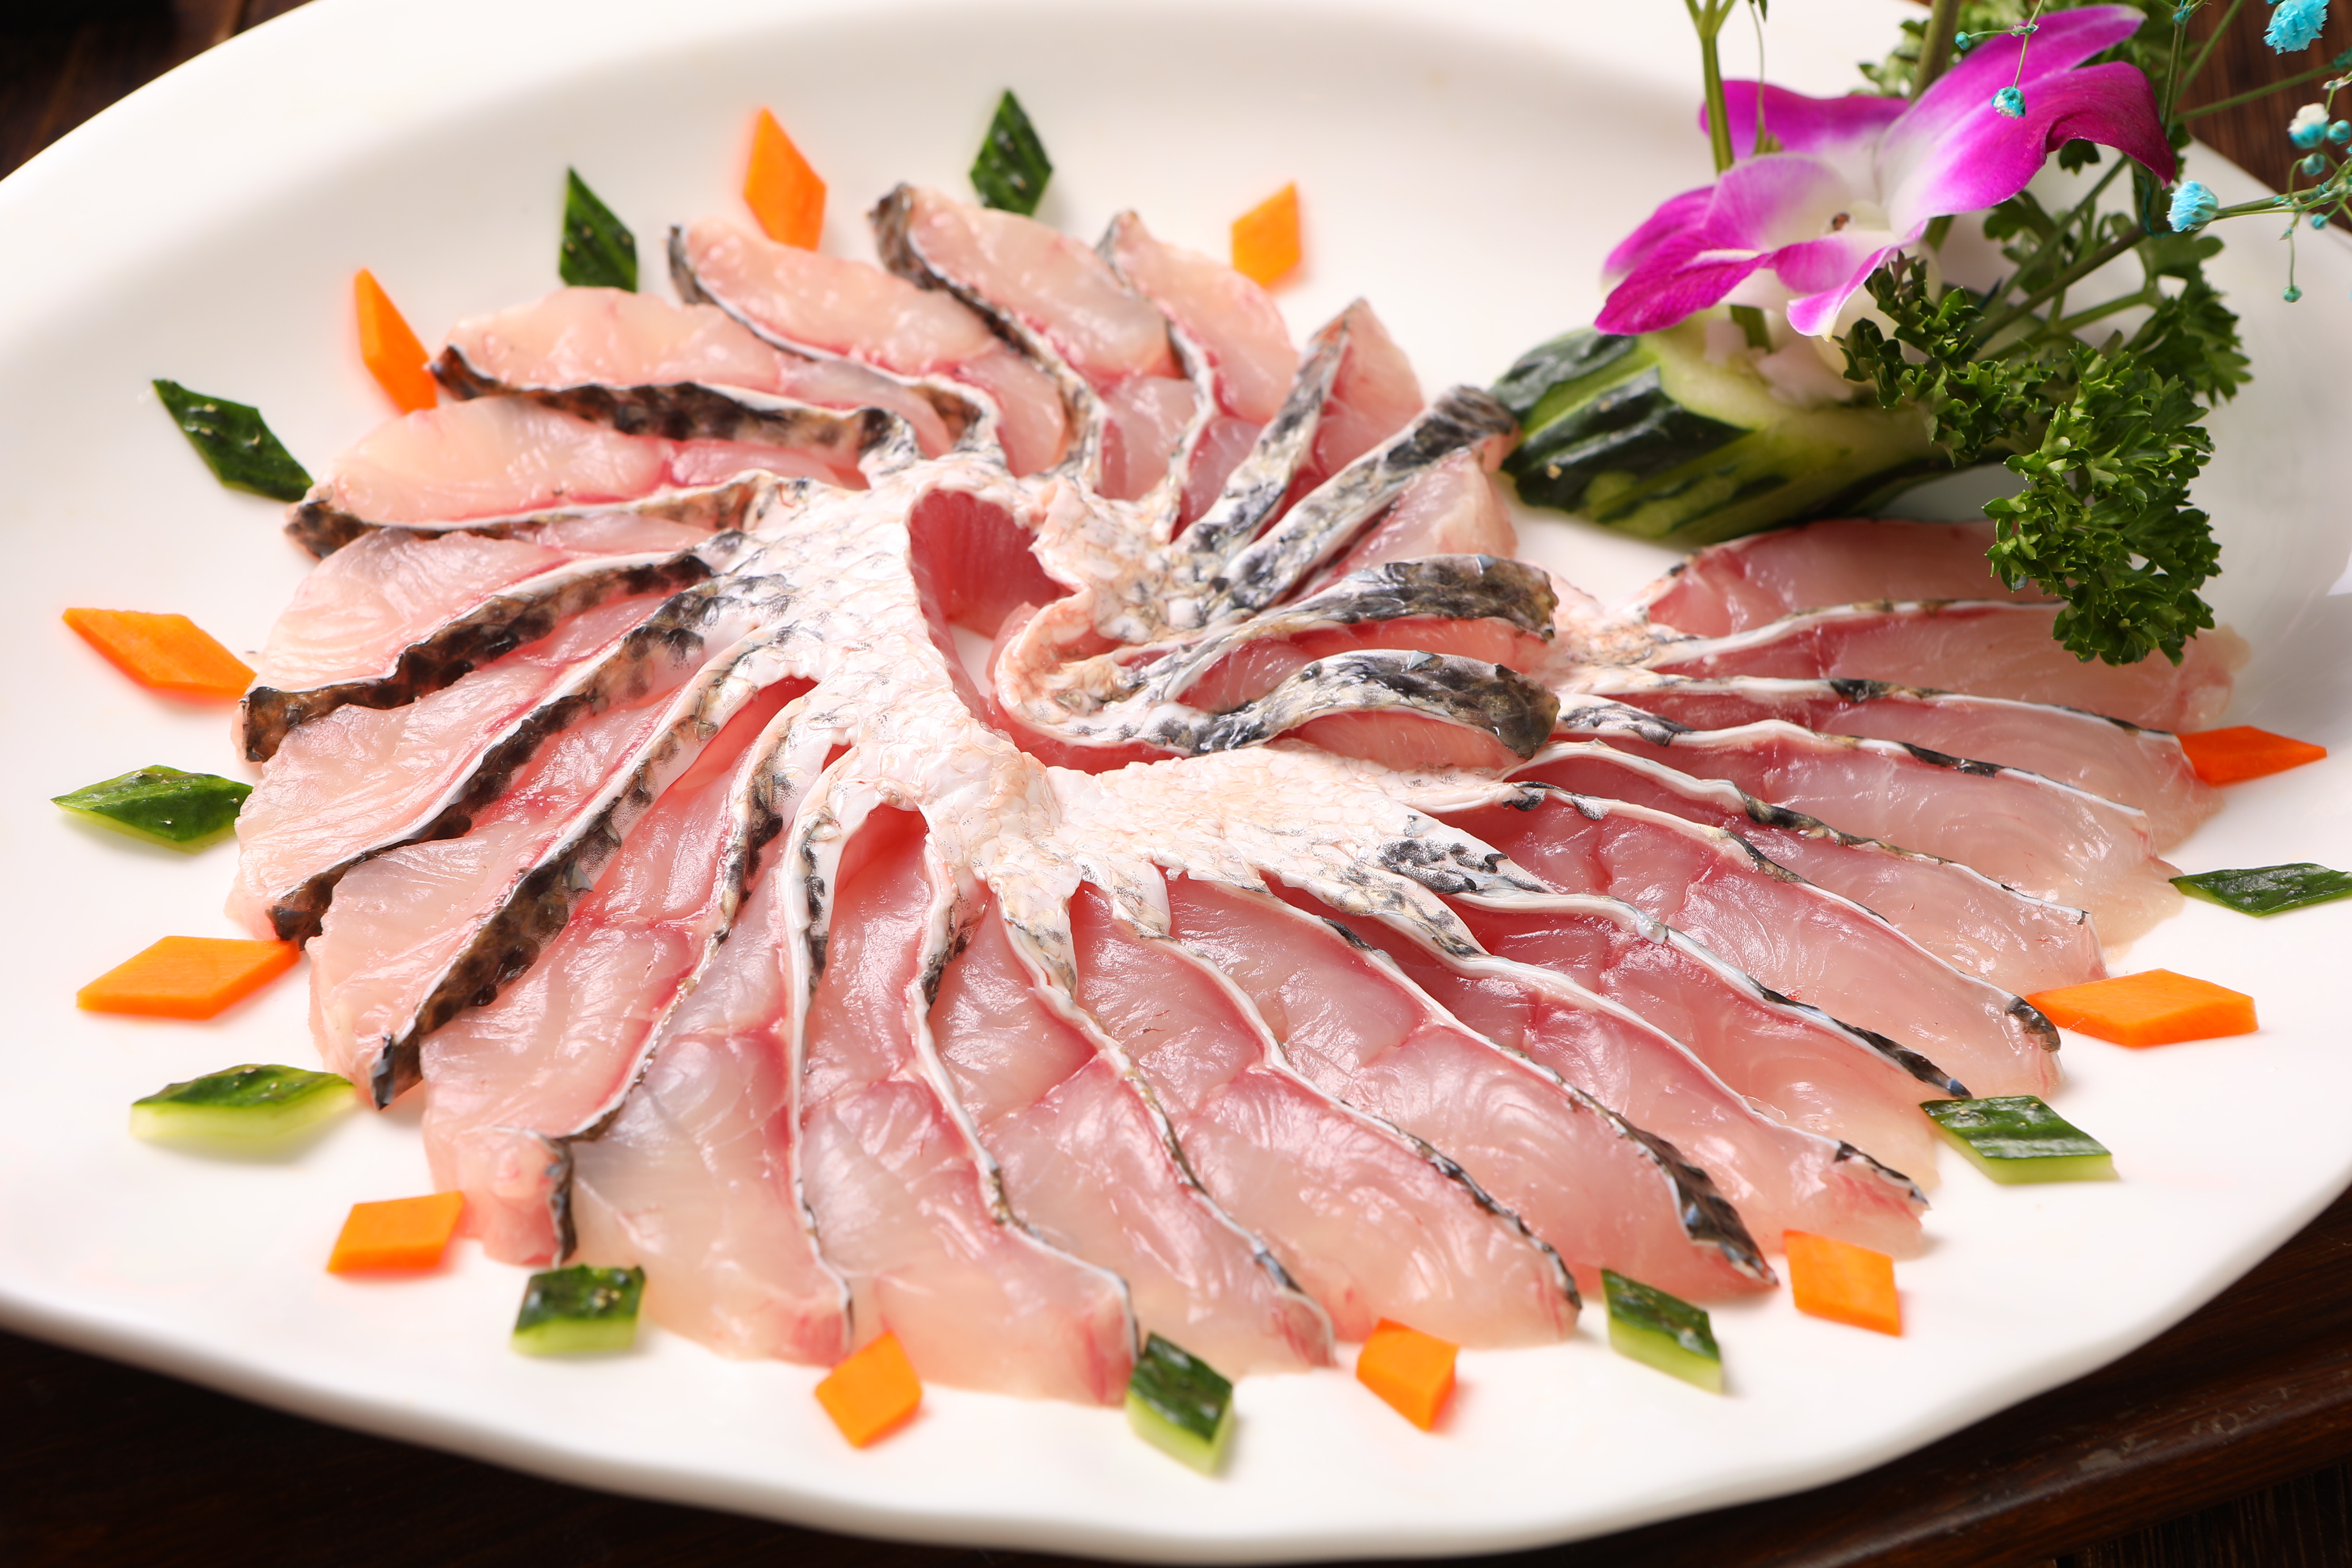 此次上海渔博会现场,大佛山宏大食品有限公司将携星洲红斑鱼片,黑鱼片